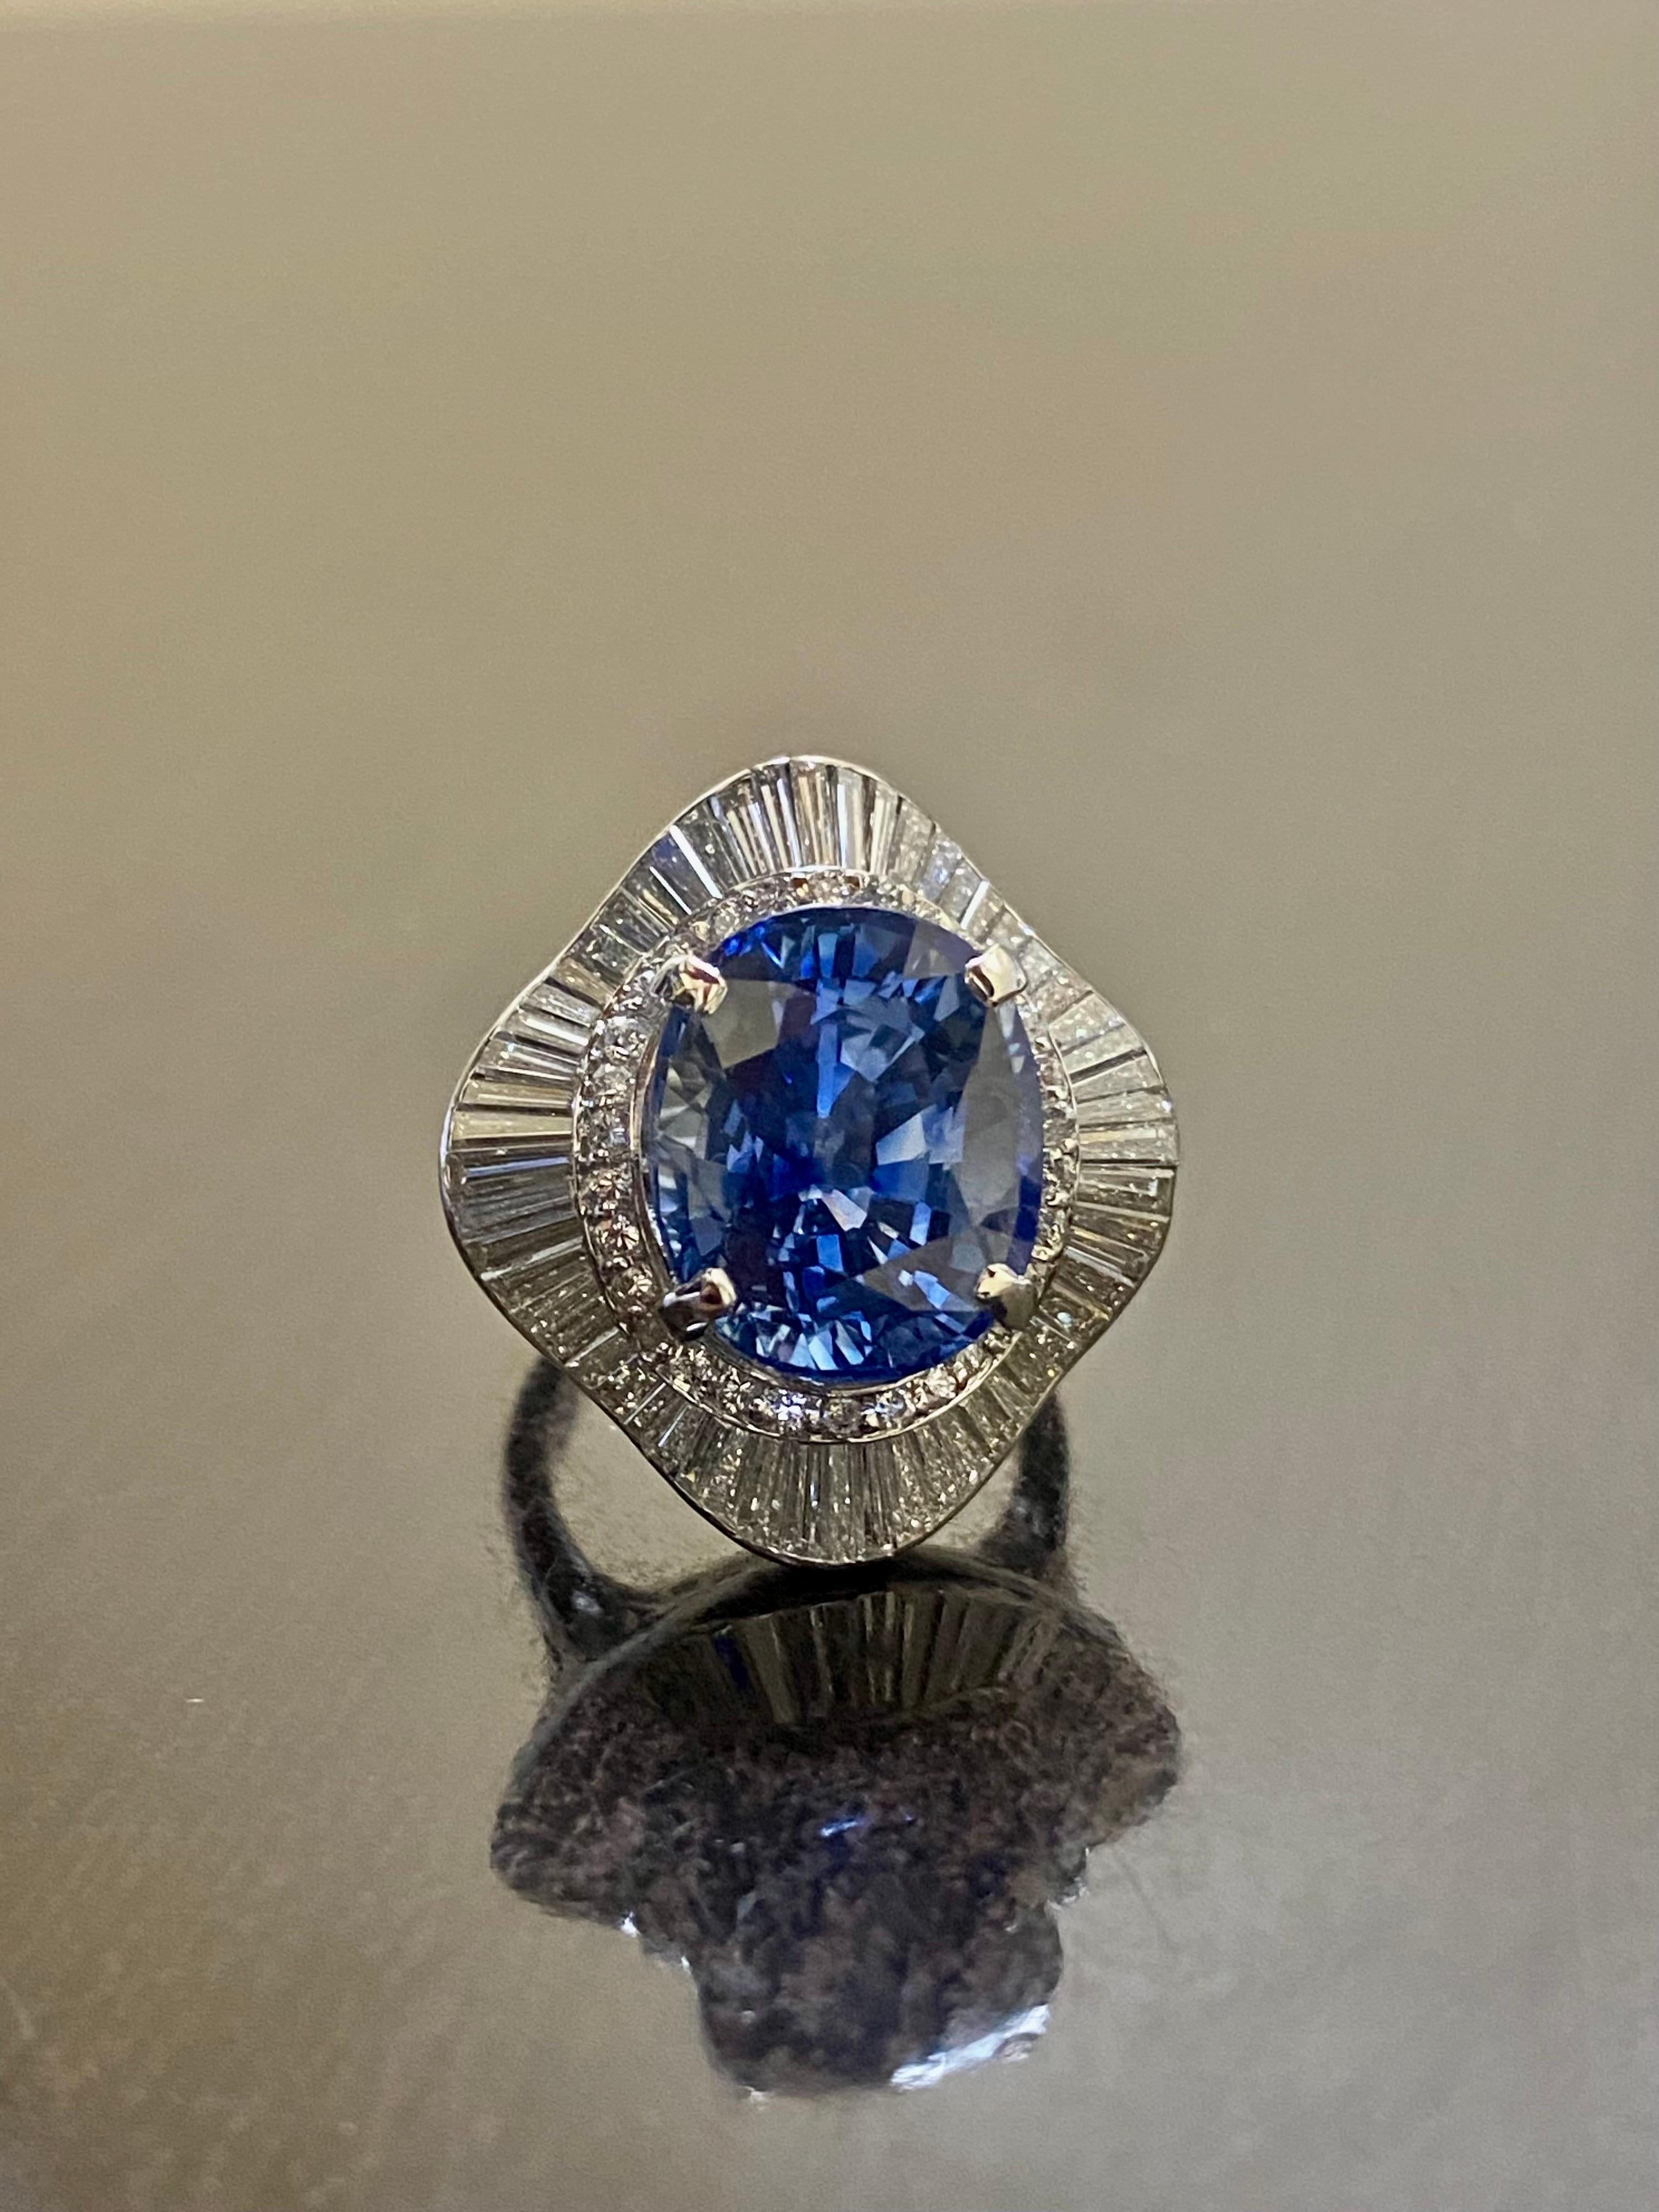 Collection/One Designs

Notre dernier design ! Un saphir bleu ovale, élégant et lustré, entouré de diamants baguettes dans une monture en halo.

Métal - 90 % de platine, 10 % d'iridium.

Pierres - Saphir bleu ovale certifié GIA 10,47 carats, 55